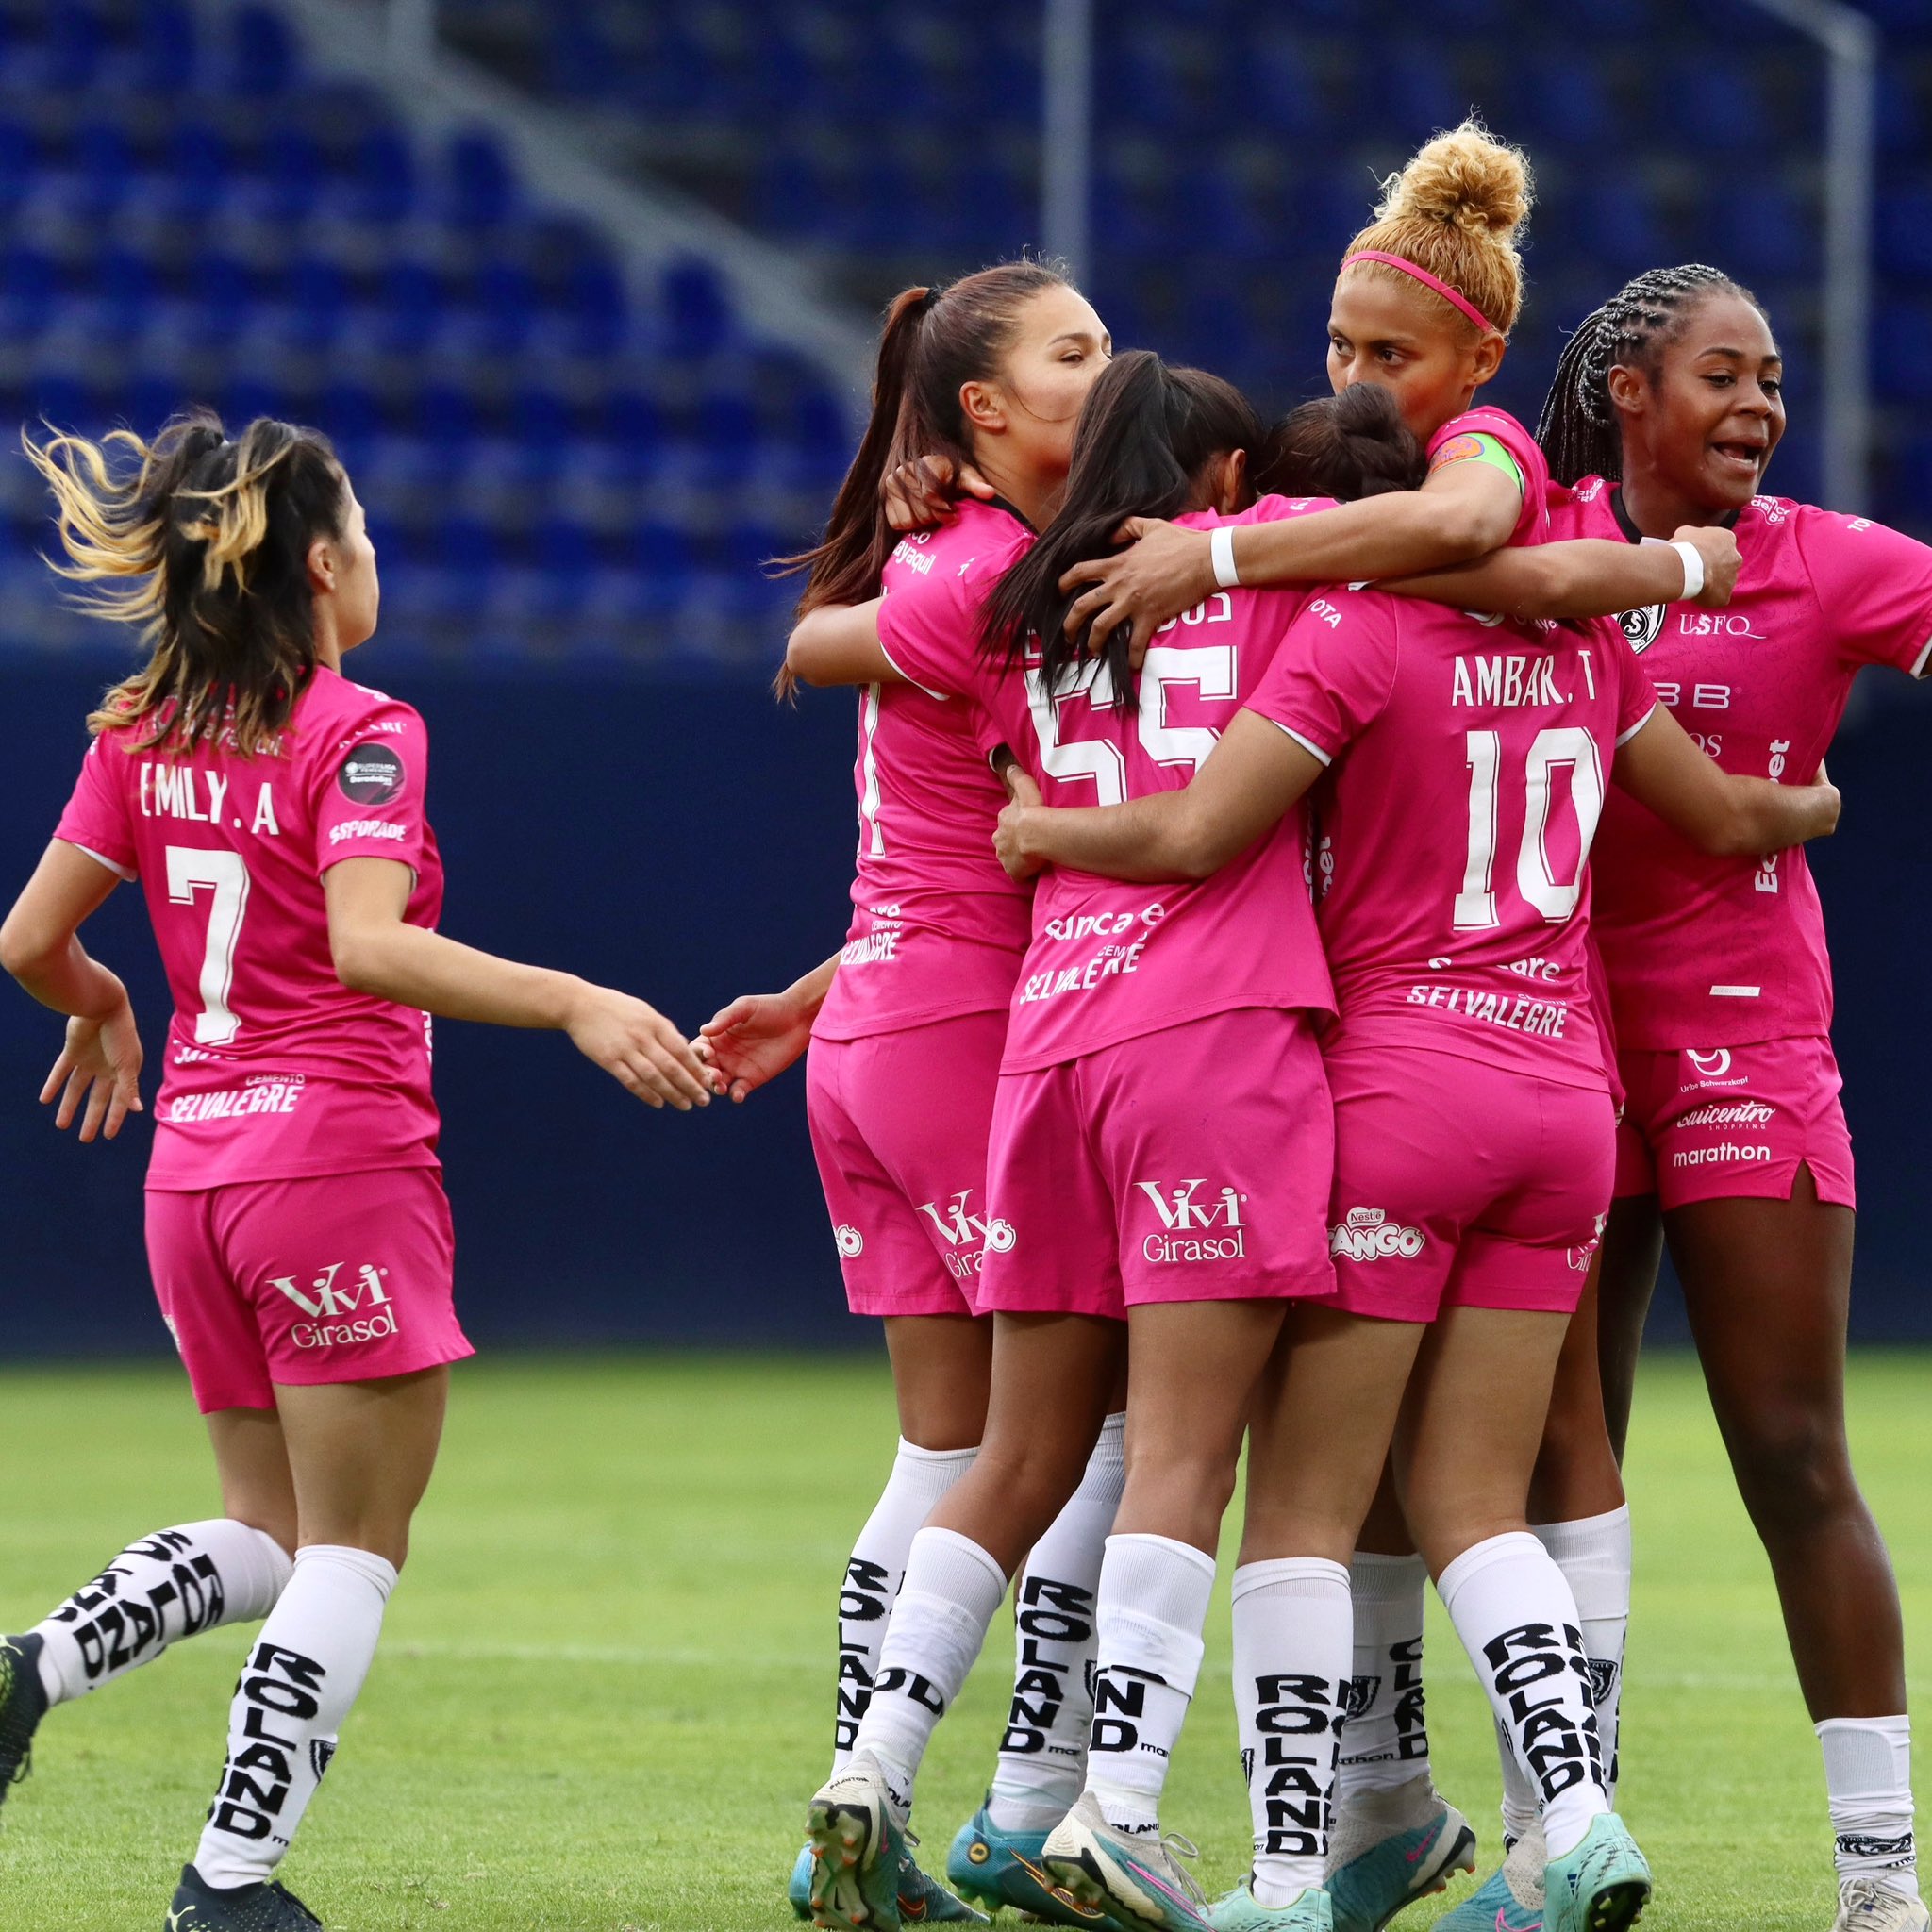 Dragonas de IDV inaugurará primer centro de alto rendimiento especializado  en fútbol femenino - La Red 102.1